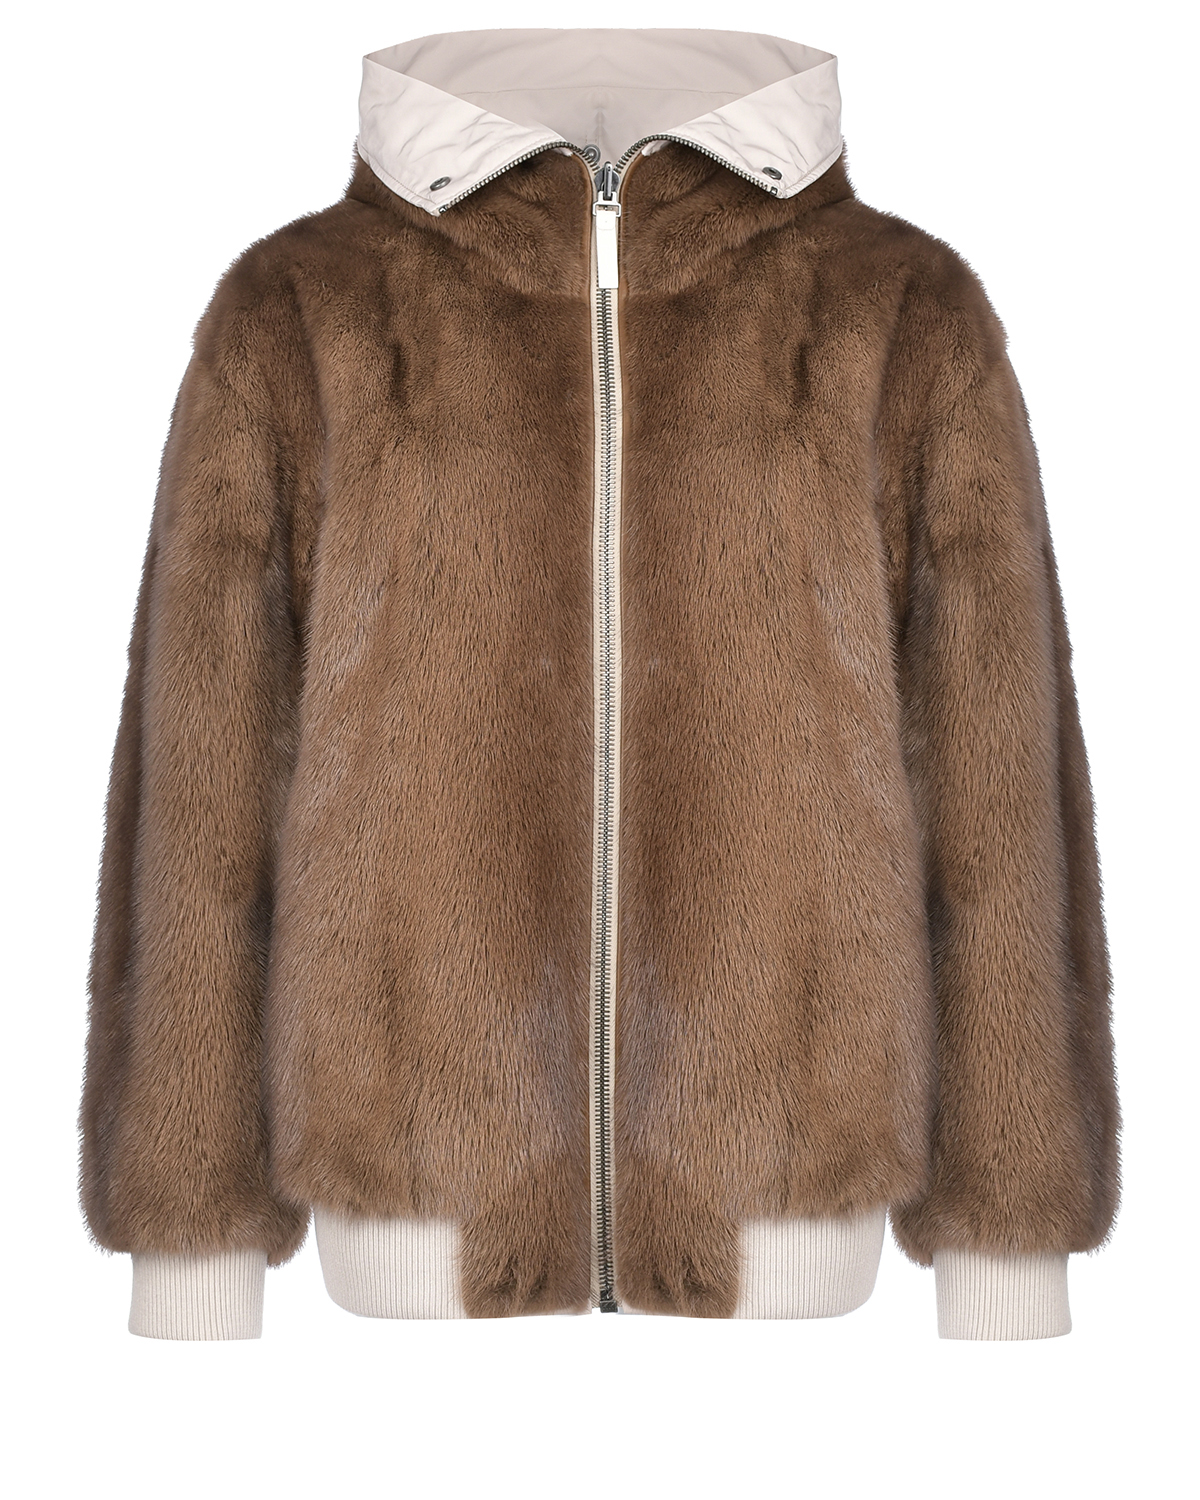 Двухсторонняя куртка с мехом норки Yves Salomon, размер 42, цвет коричневый - фото 2